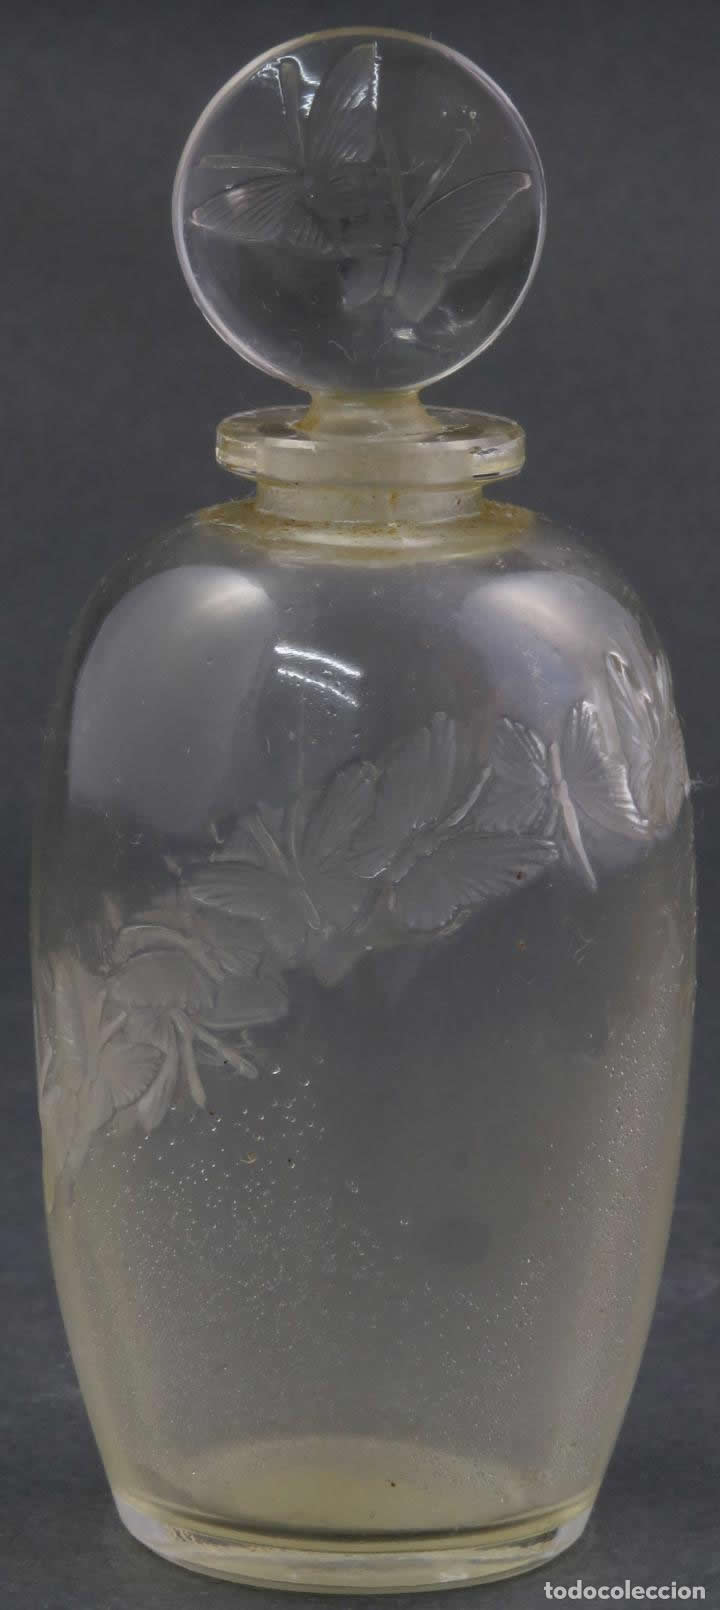 R. Lalique L'Anneau Merveilleux-2 Perfume Bottle